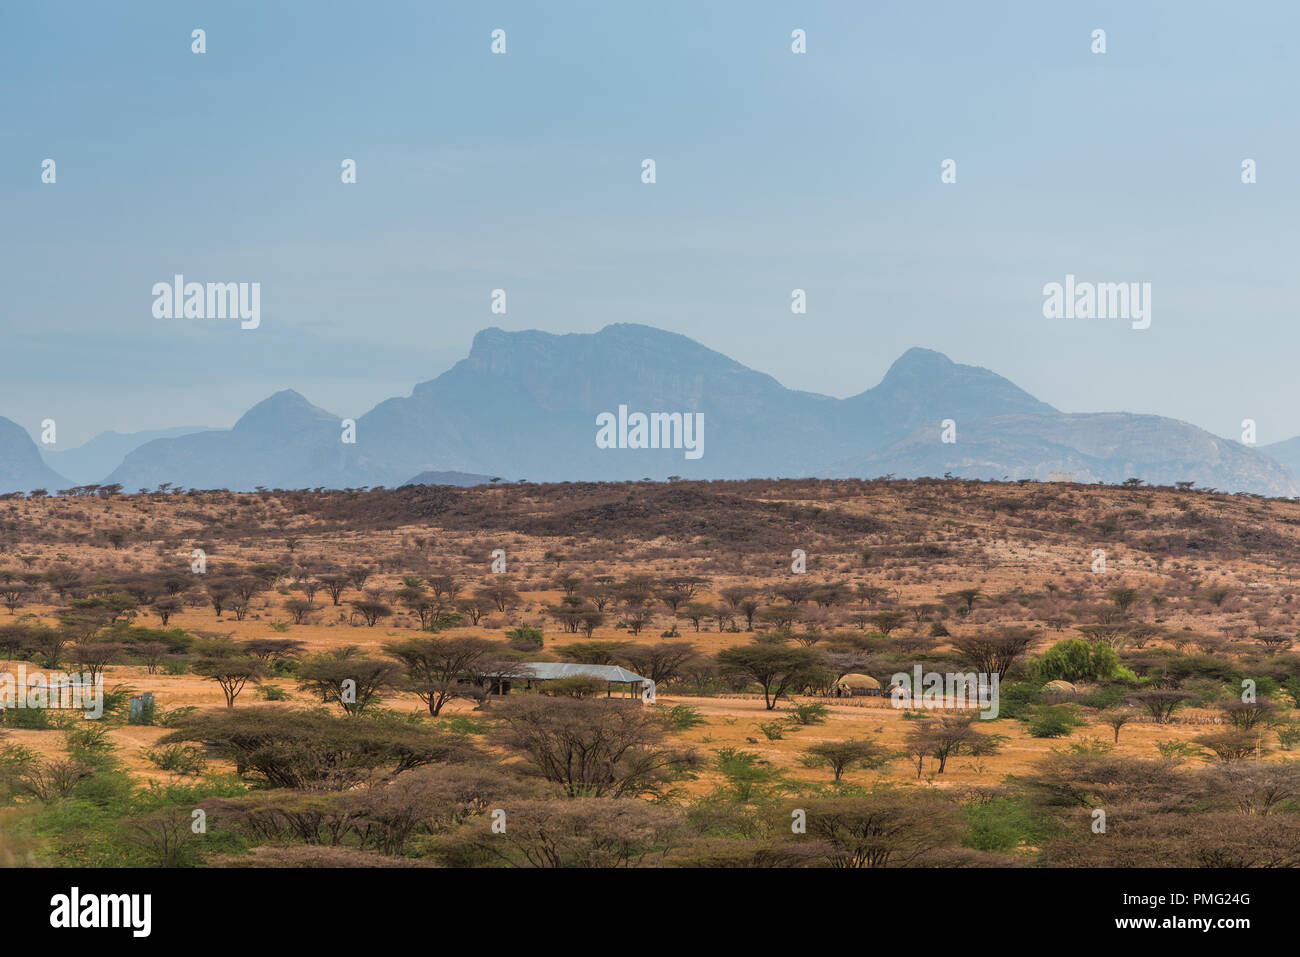 Deserto arido paesaggio con arbusti contro lo sfondo di una lontana blue mountain nei pressi di Marsabit, nel deserto Kaisut, nel nord del Kenya Foto Stock